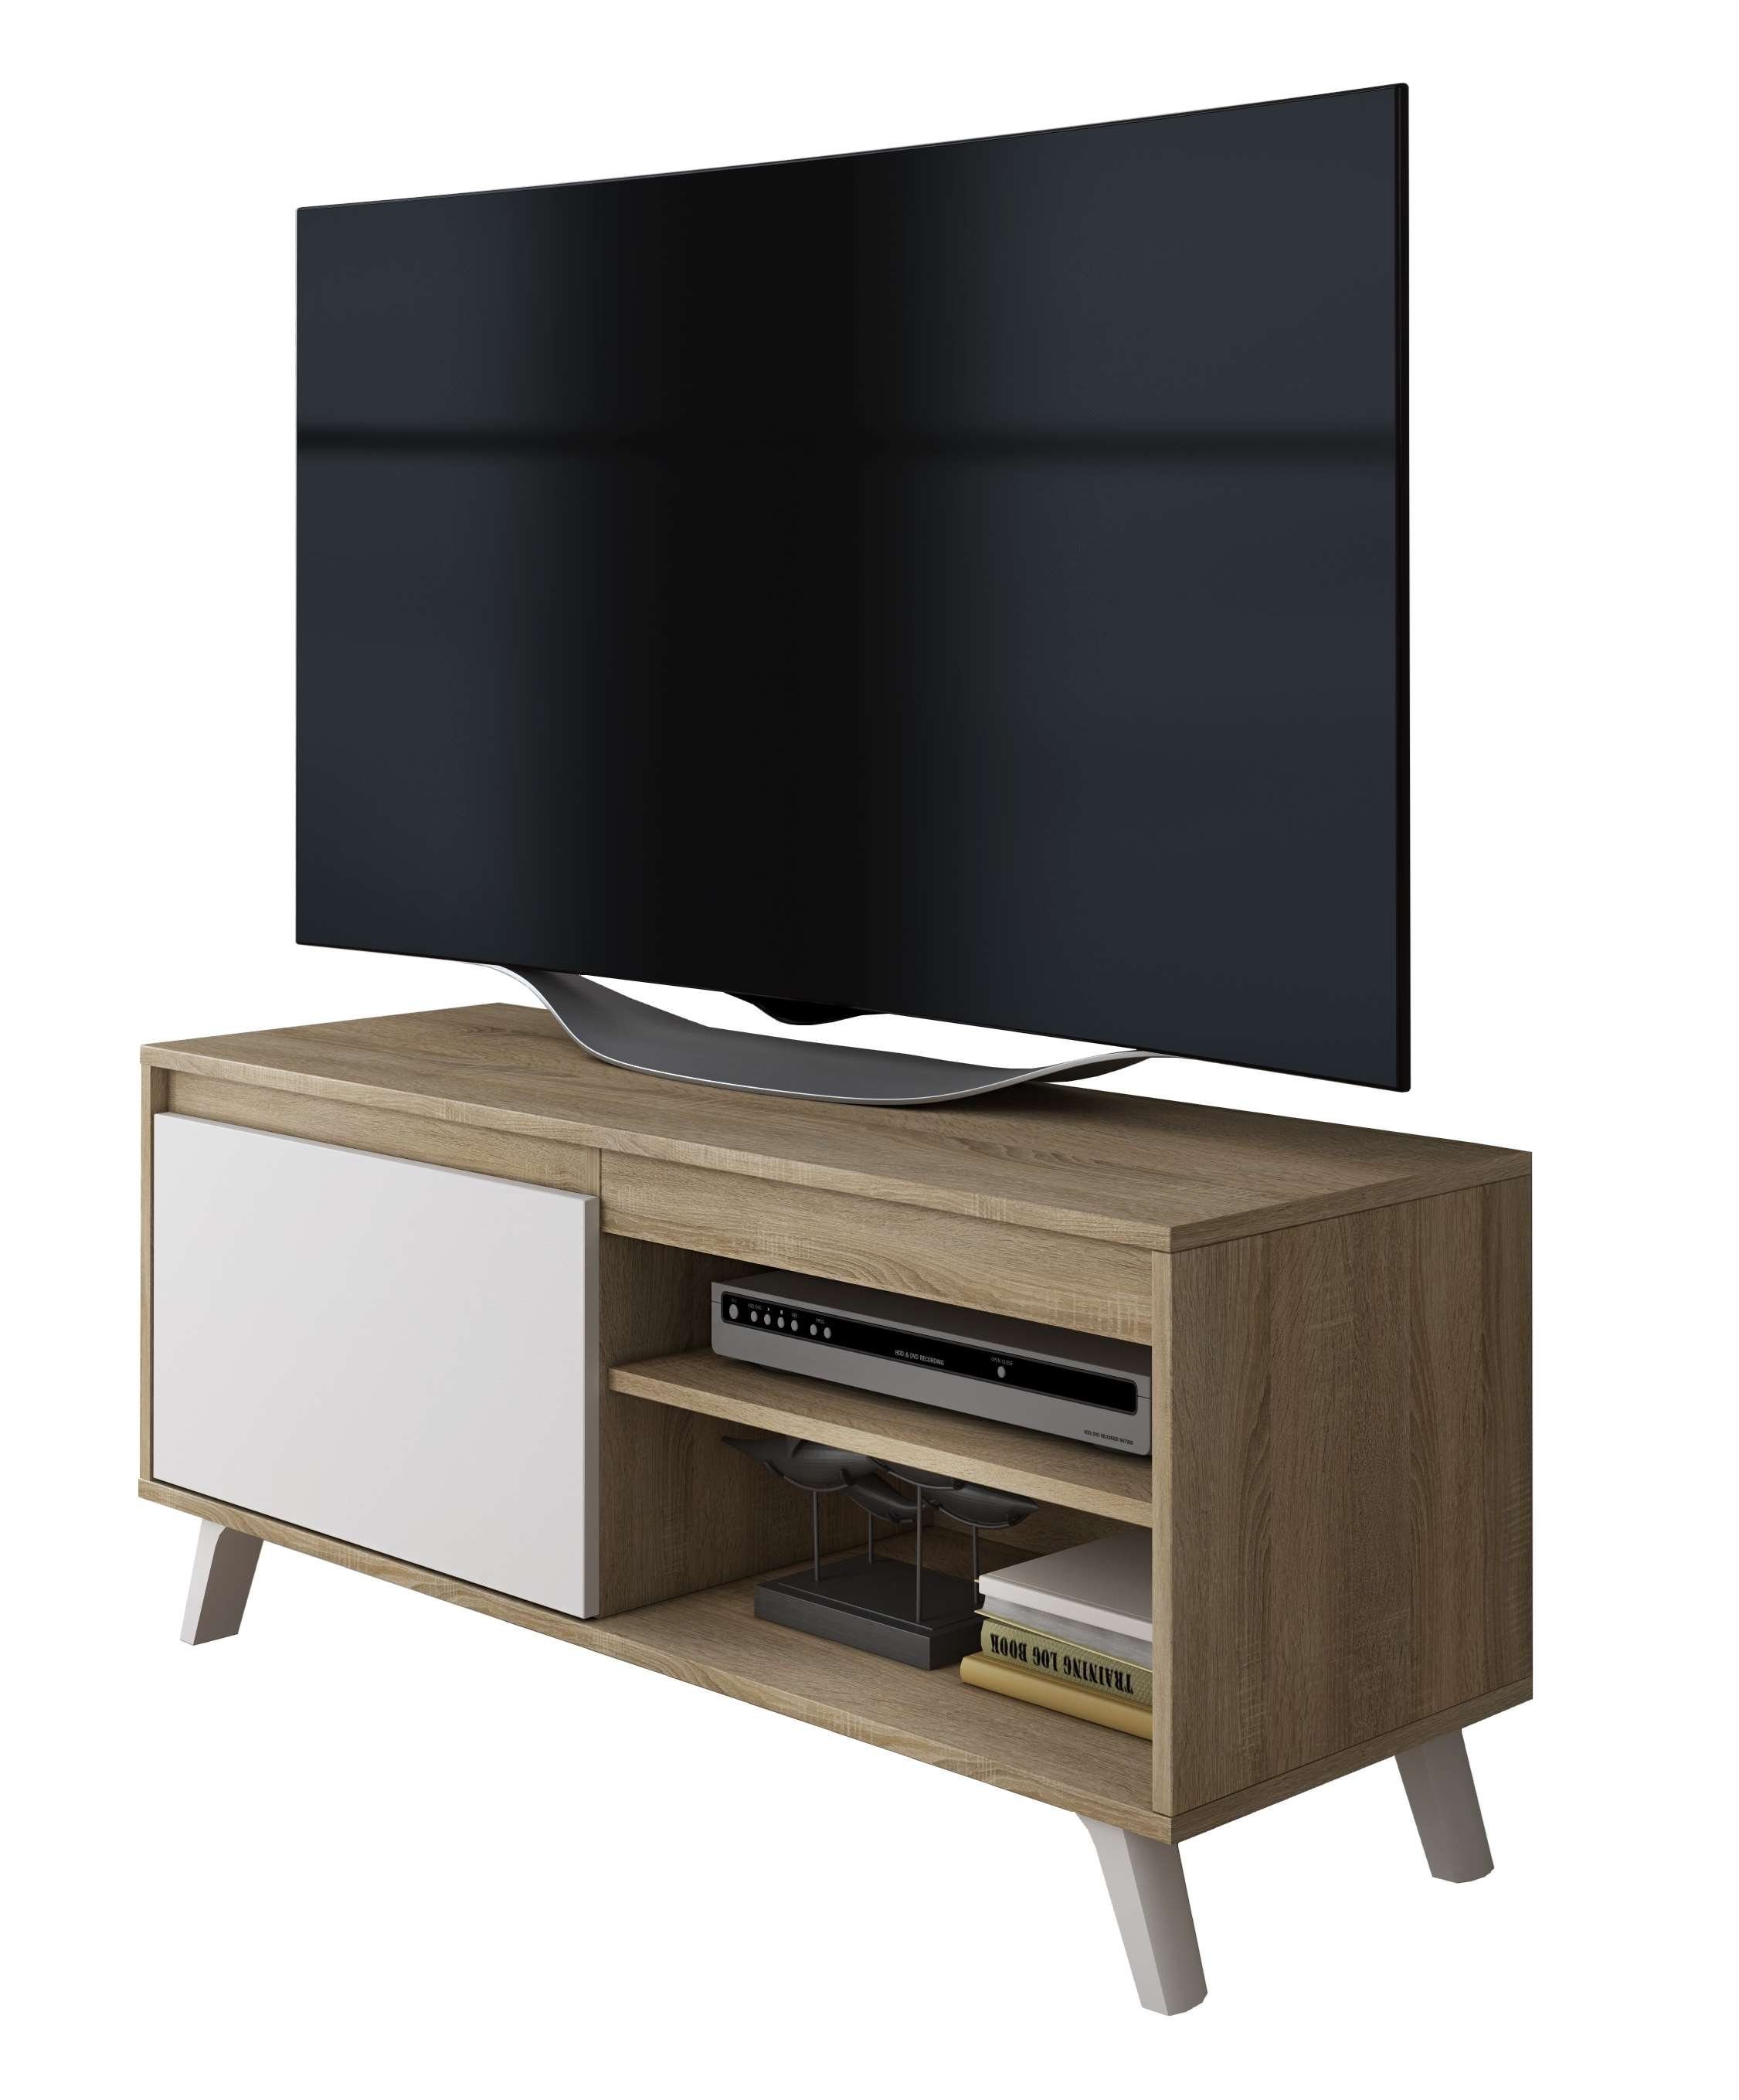 TV-Schrank DARSI 140 Lowboard Sonoma/Weiß skandinavisches Kommode oder cm Furnix Fernsehschrank 100 breit Design Wahl